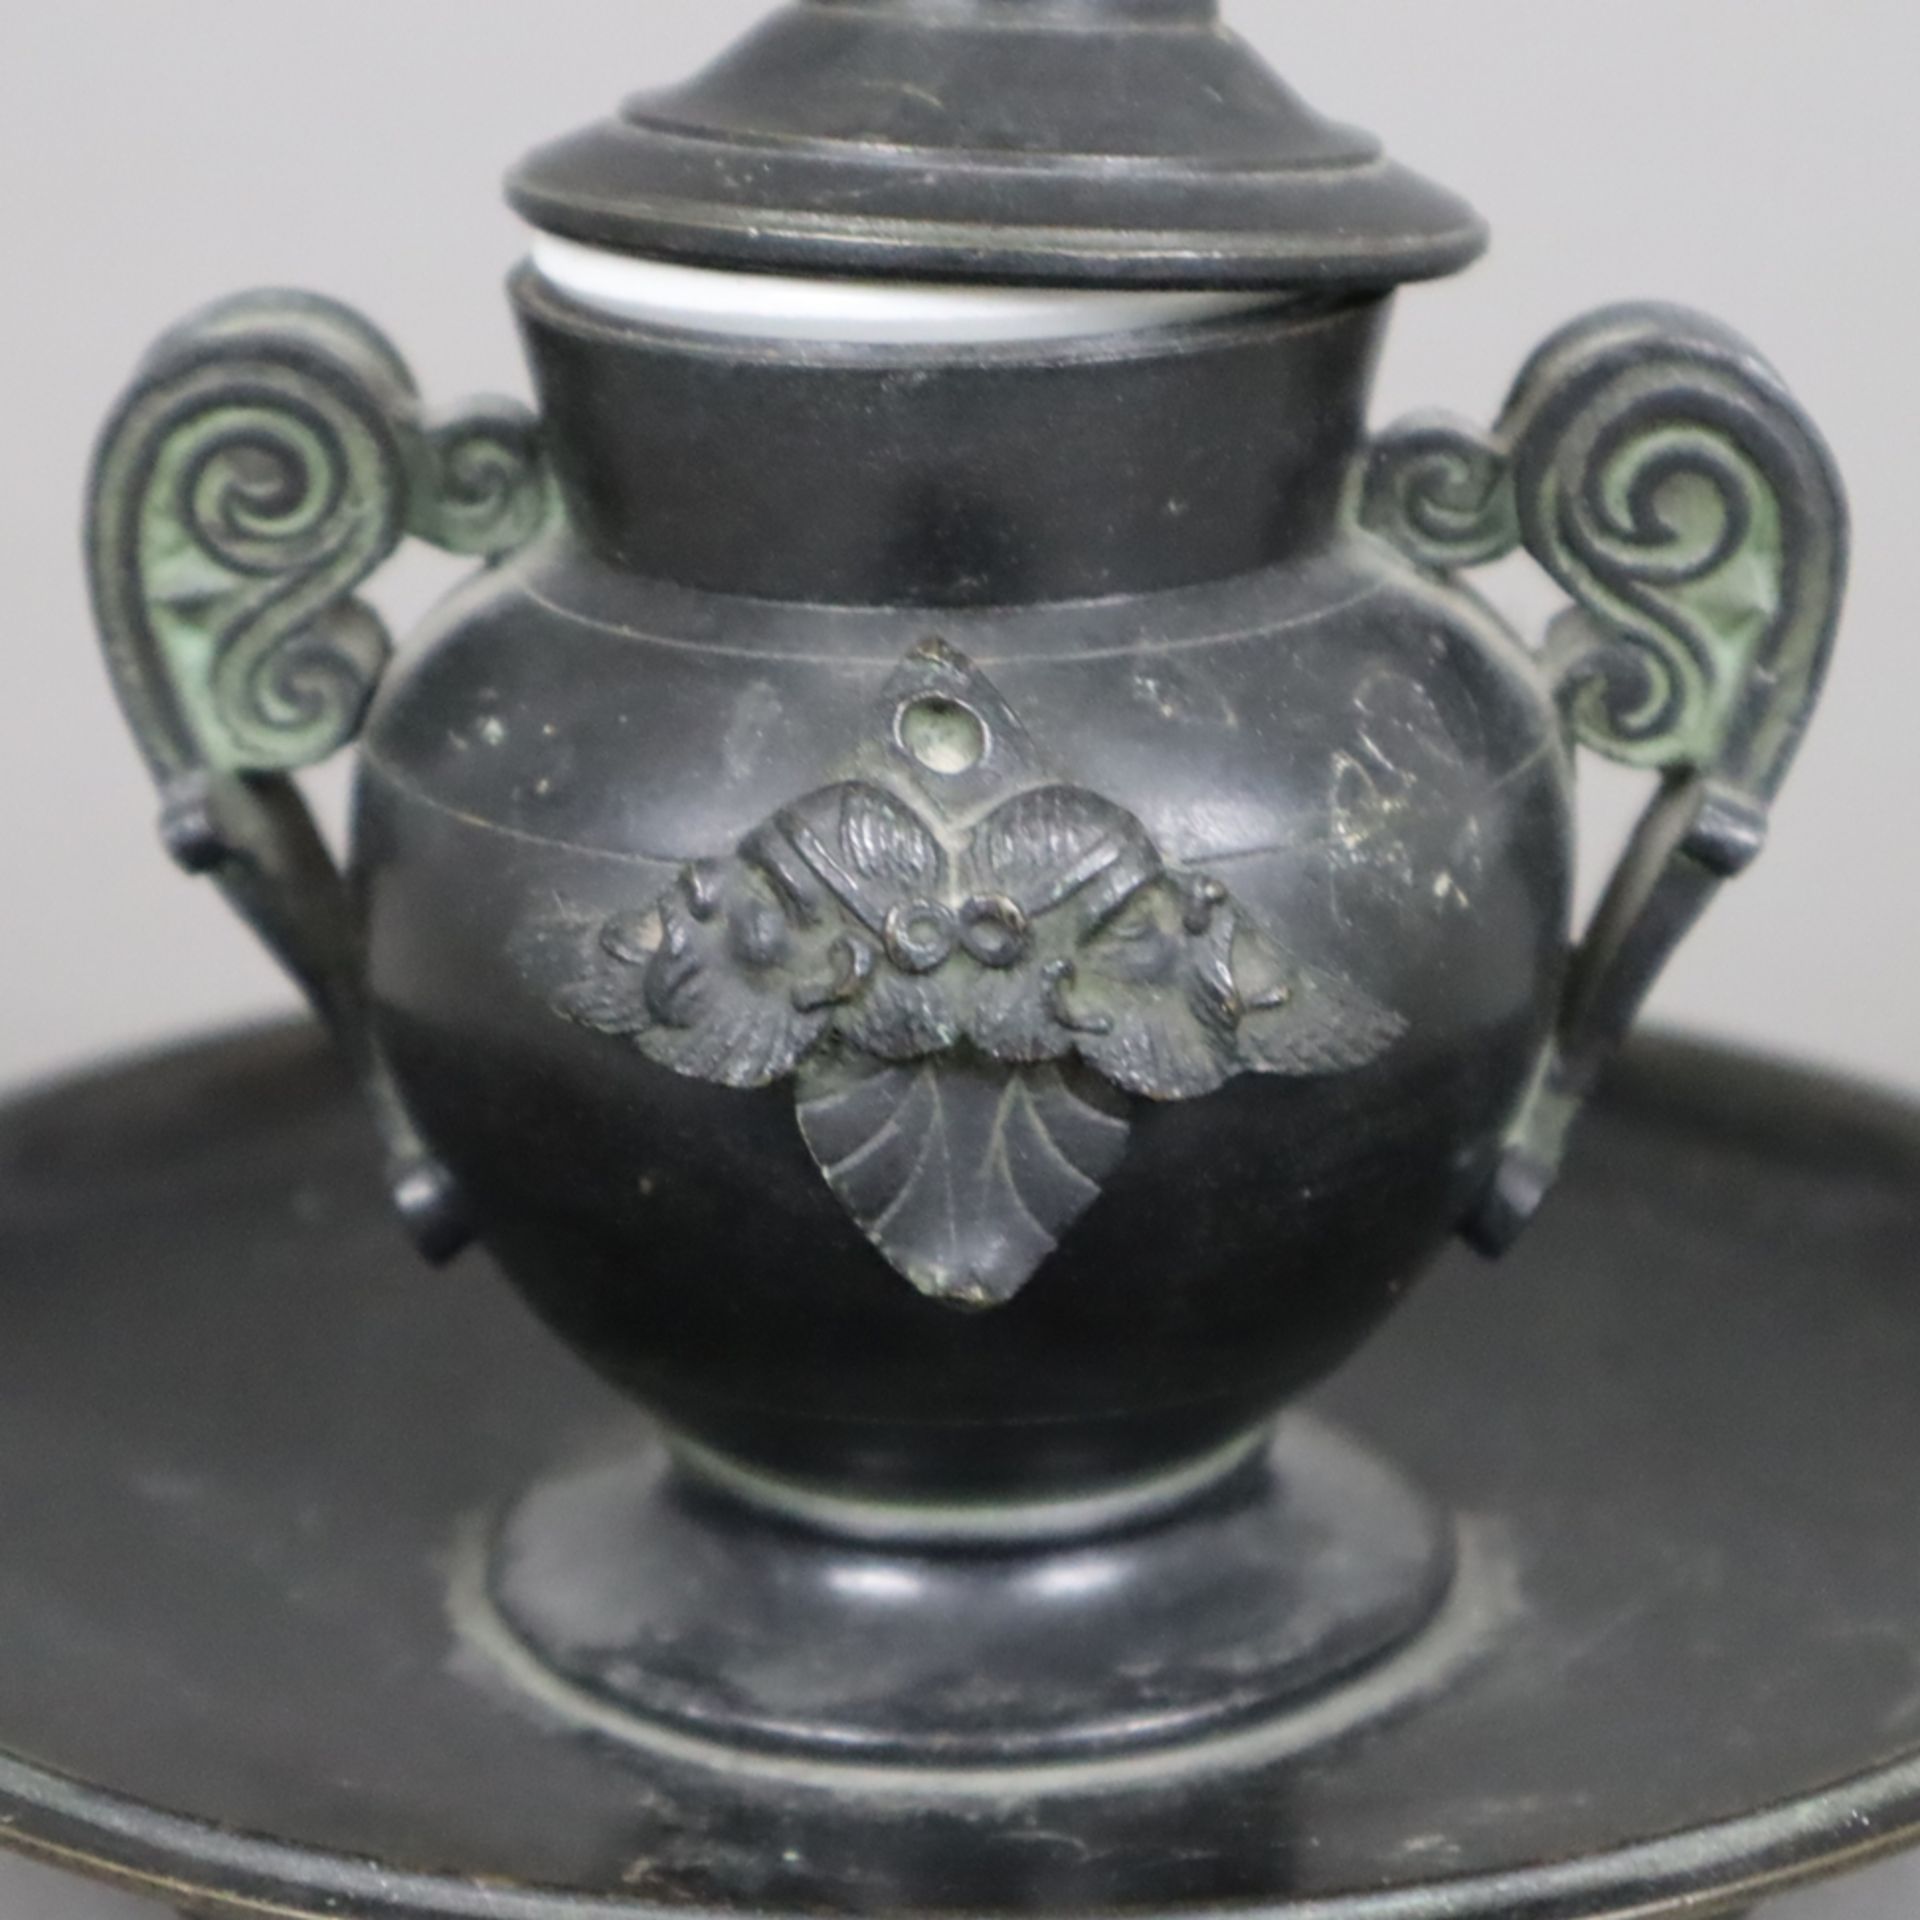 Historismus-Tintenfass - 19.Jh., Bronze, schwarz und grün patiniert, Porzellaneinsatz, auf rundem f - Bild 4 aus 5